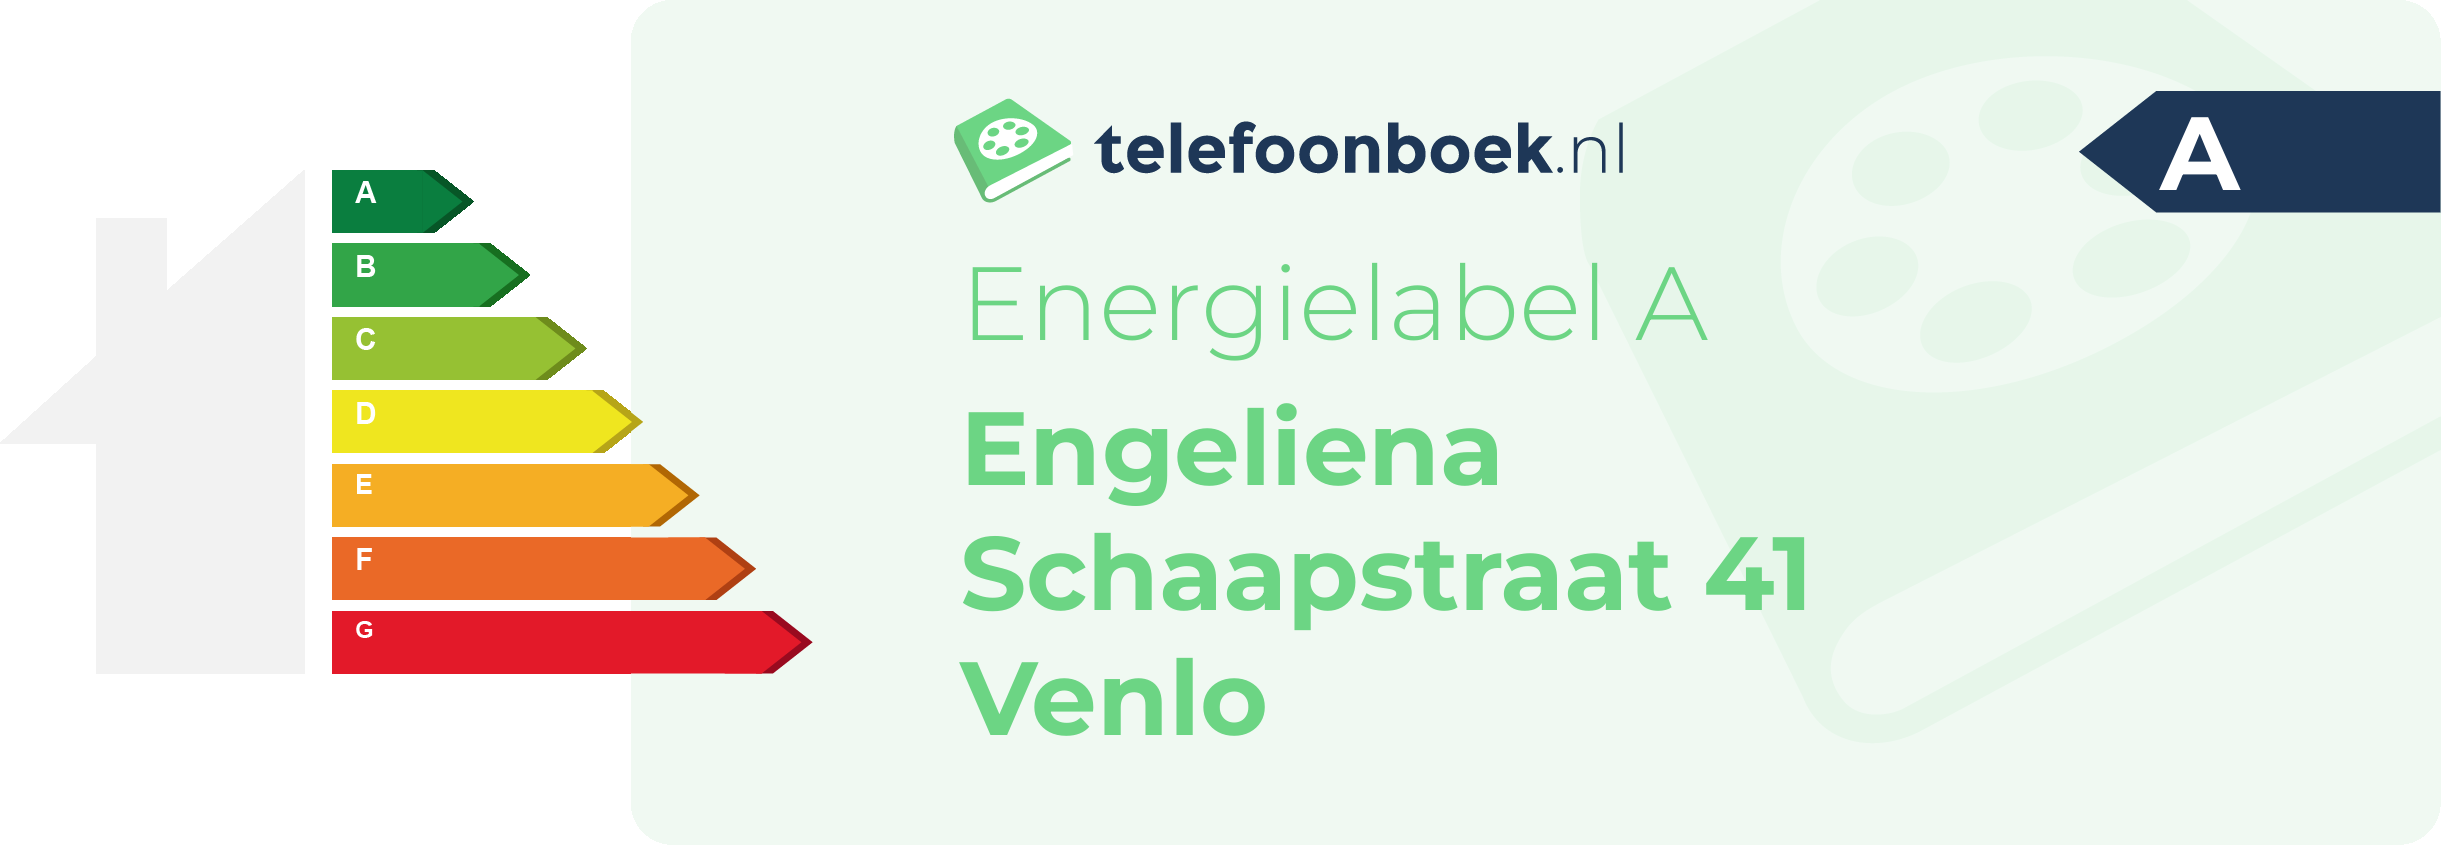 Energielabel Engeliena Schaapstraat 41 Venlo